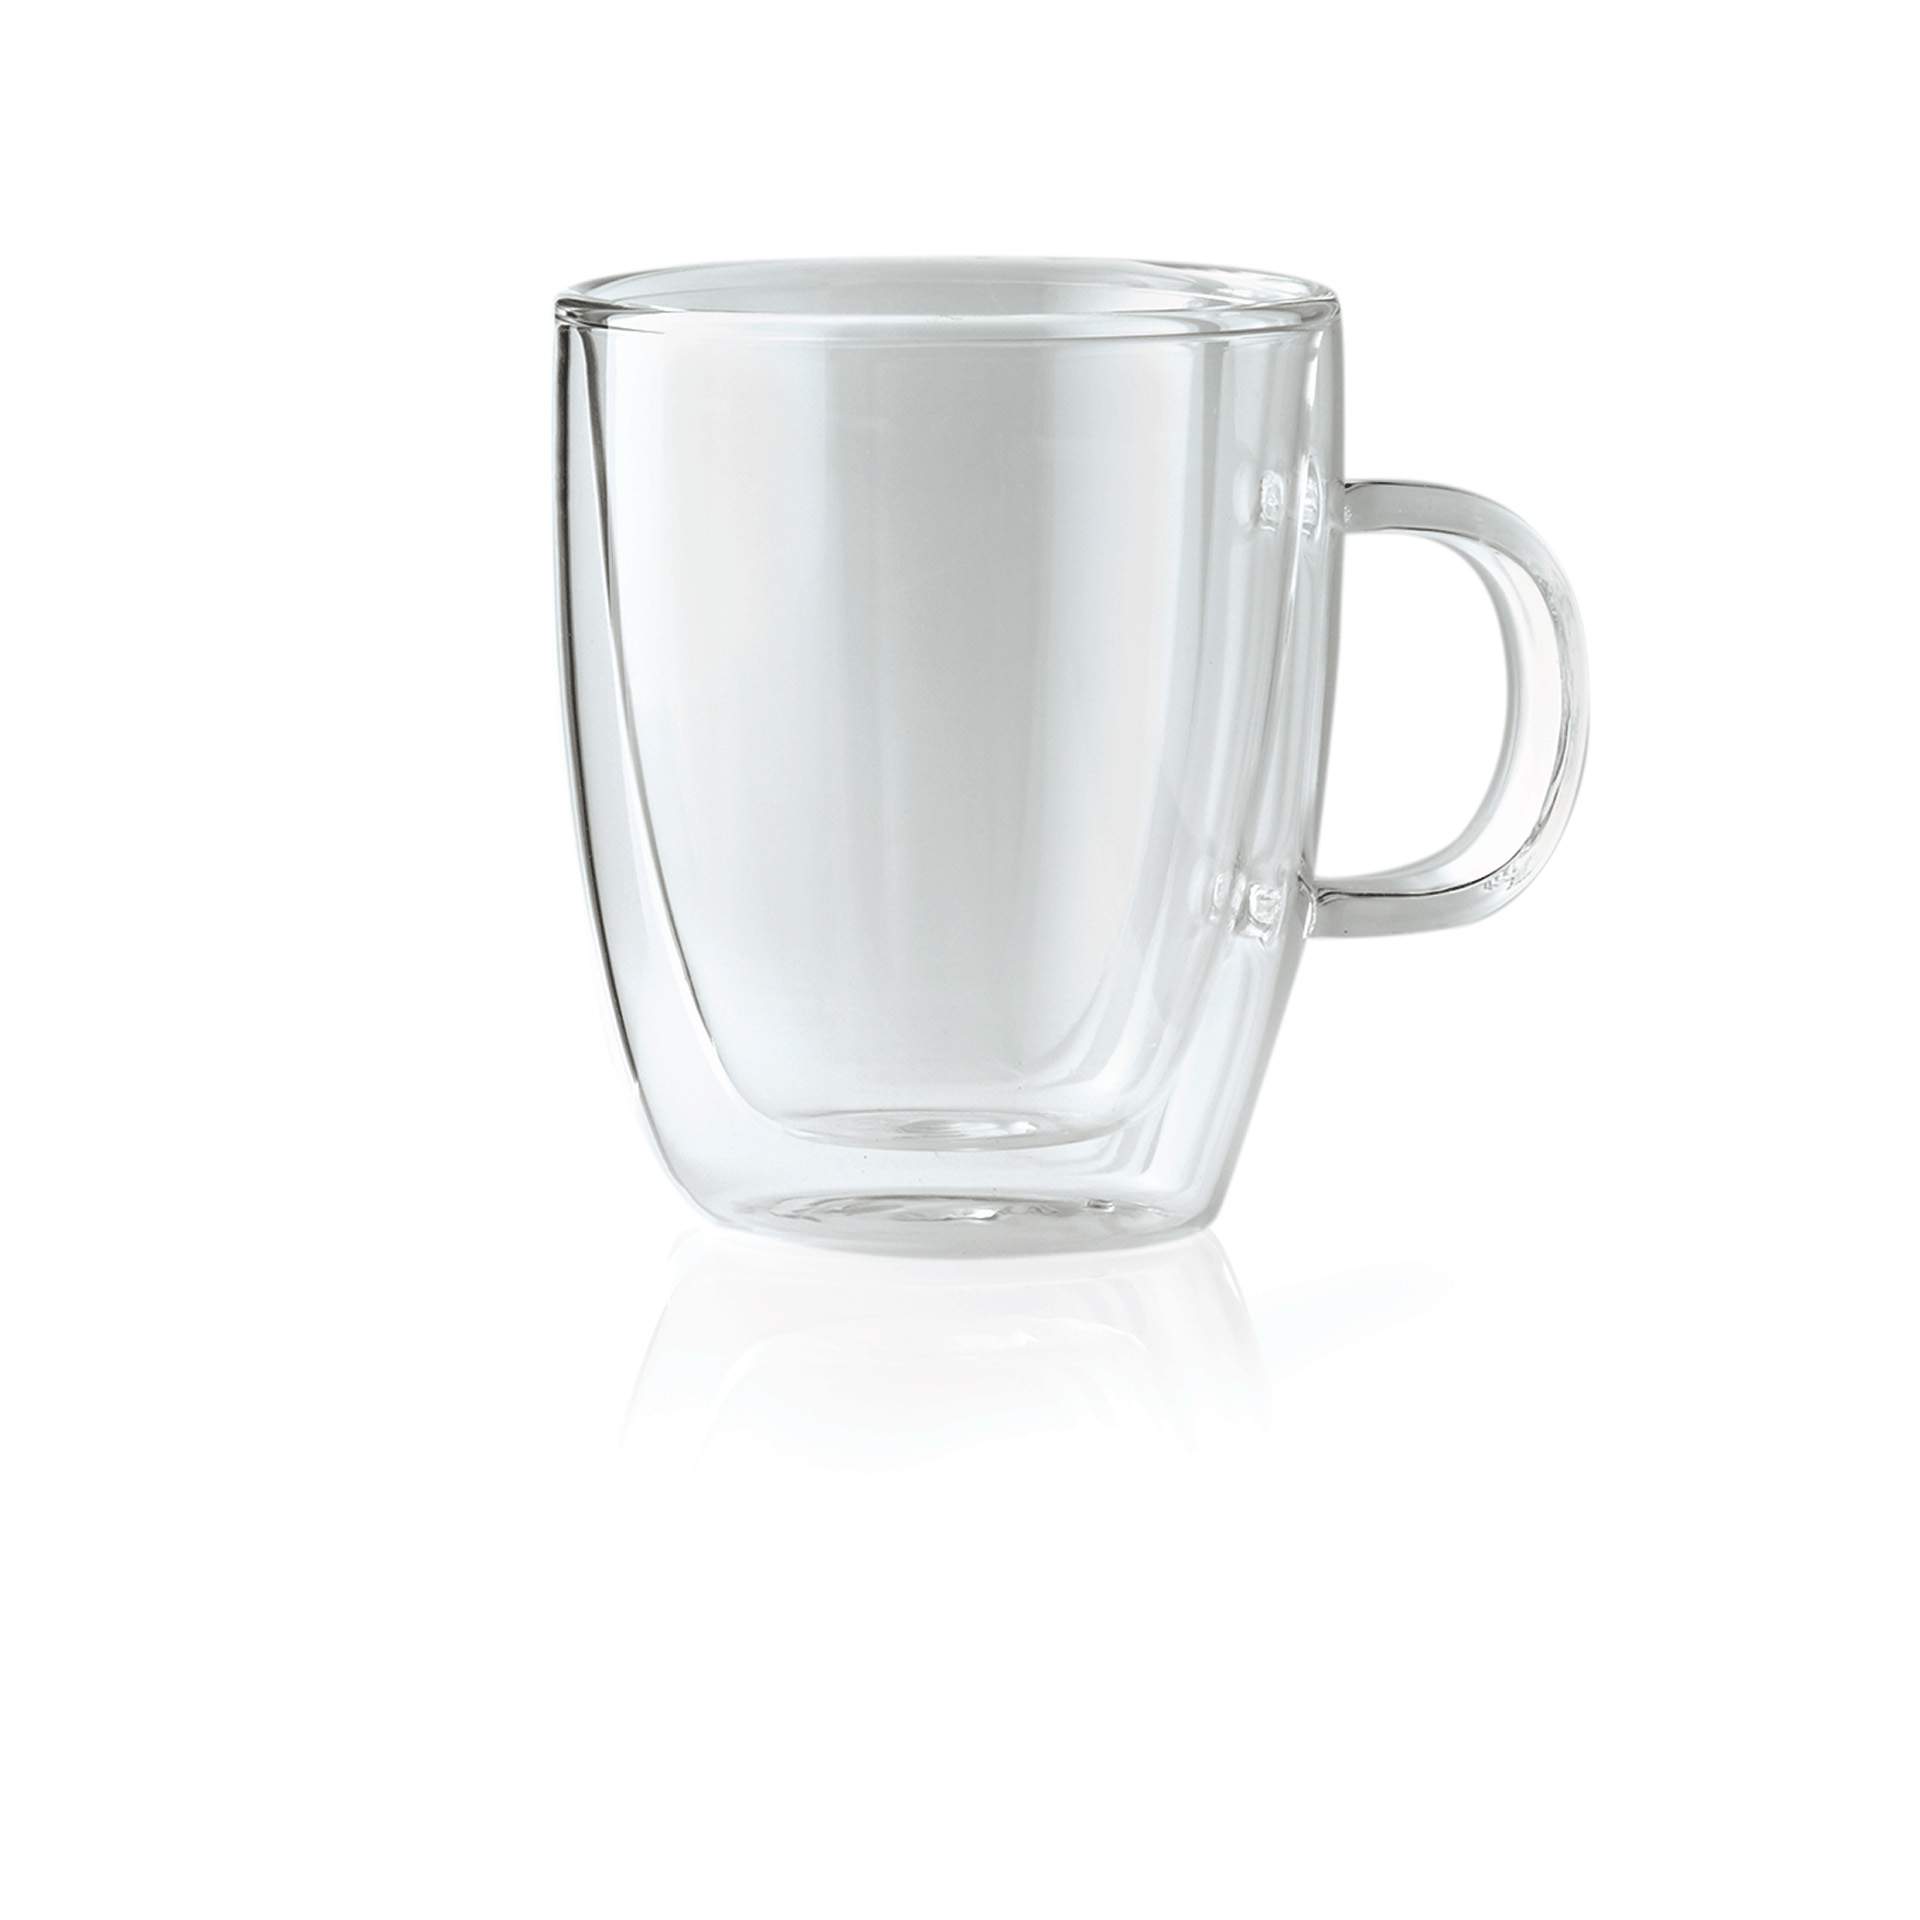 Teeglas - mit Henkel - Serie Enjoy - Abm. 10,7 cm - Ø oben / unten 9,3 / 6,5 cm - Inhalt 0,36 l - Glas - 1774036-A